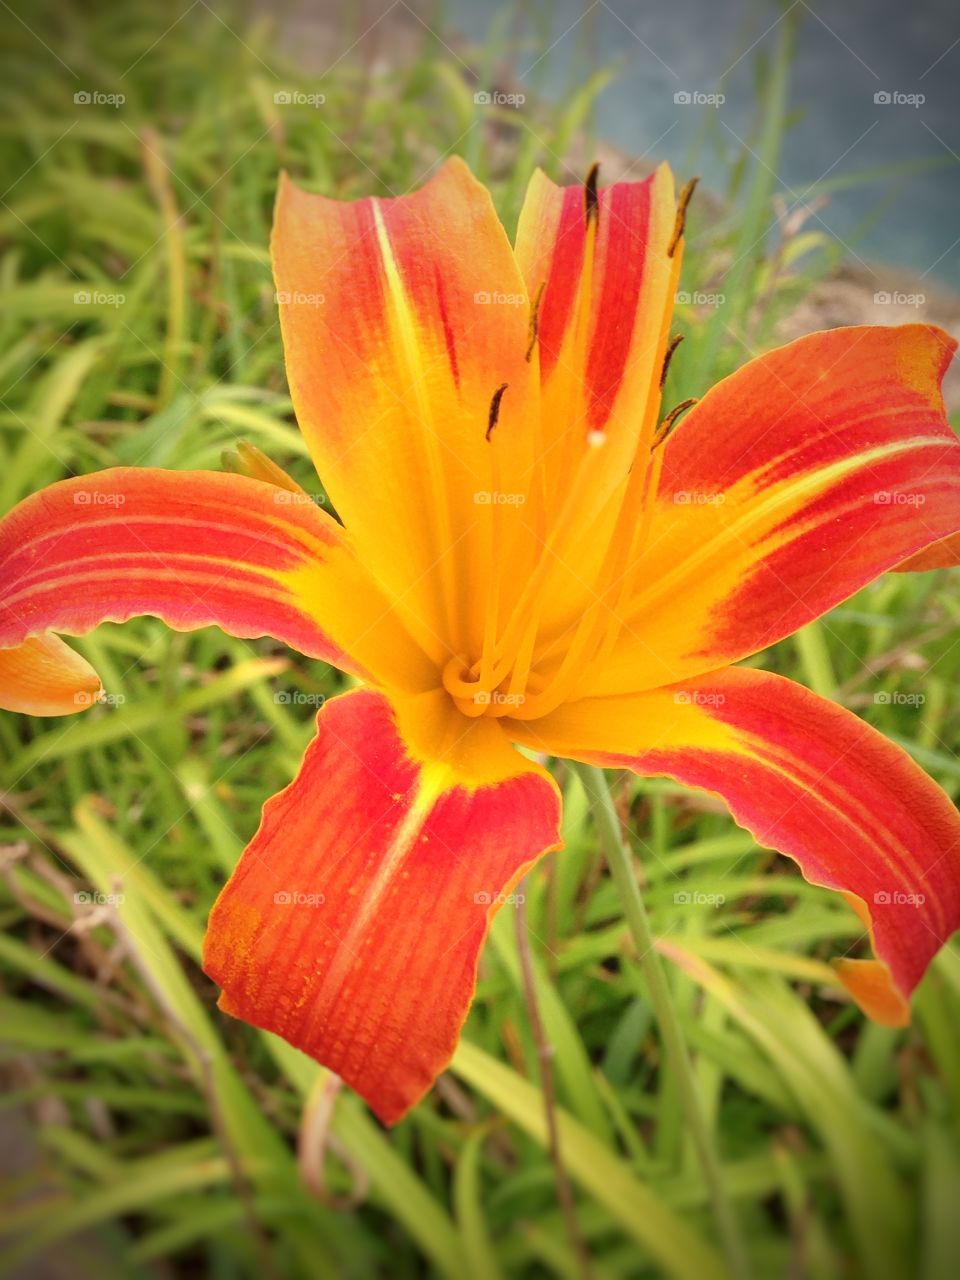 Tropical beauty. Orange flower in landscaped flowerbed